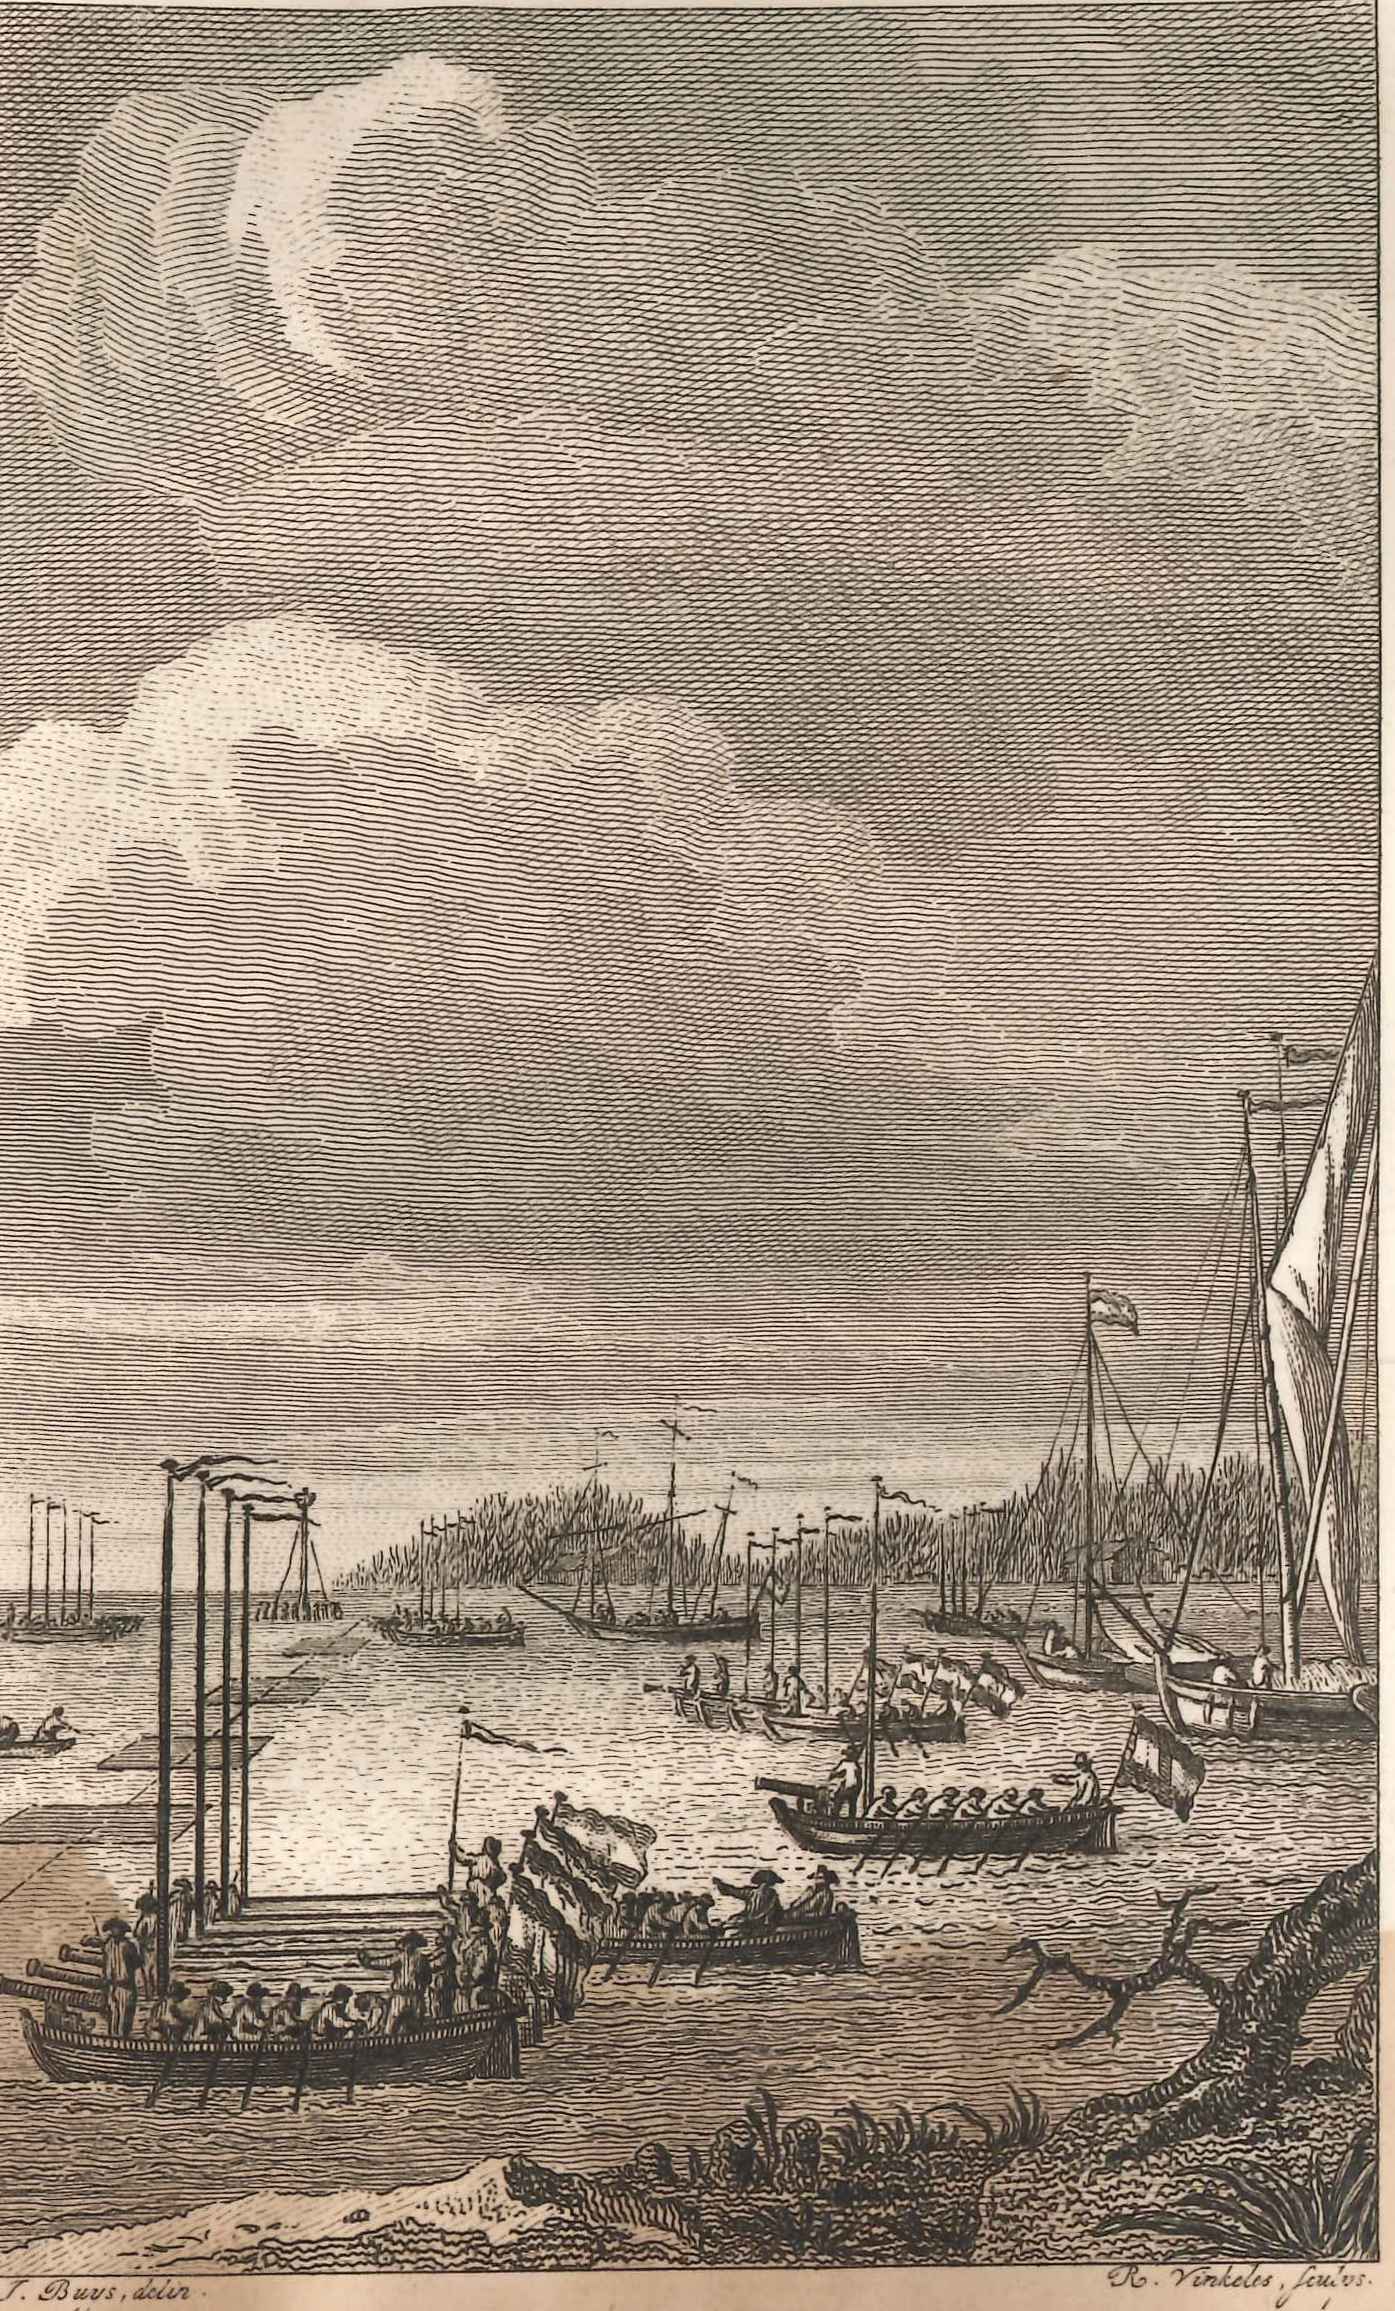 Marineschepen van de Republiek op de Dordtse Kil, 1793. 